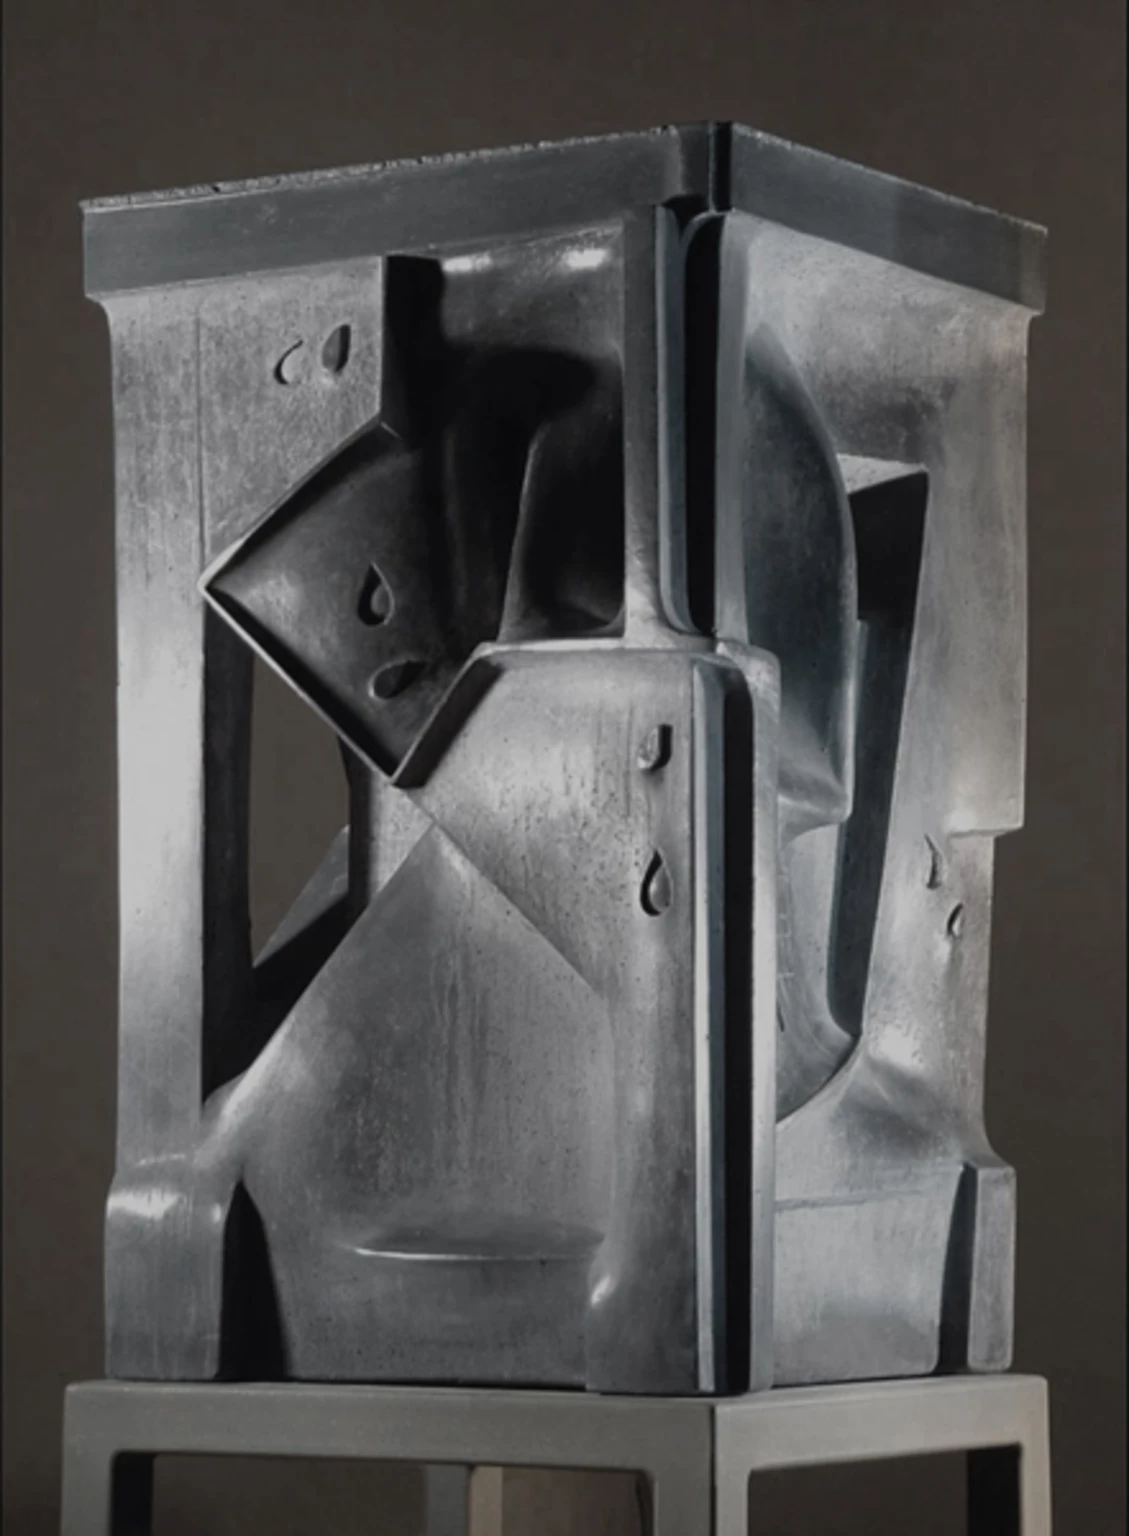 SHOAH I., 2004 - silver, concrete, 73 x 44 x 44 cm